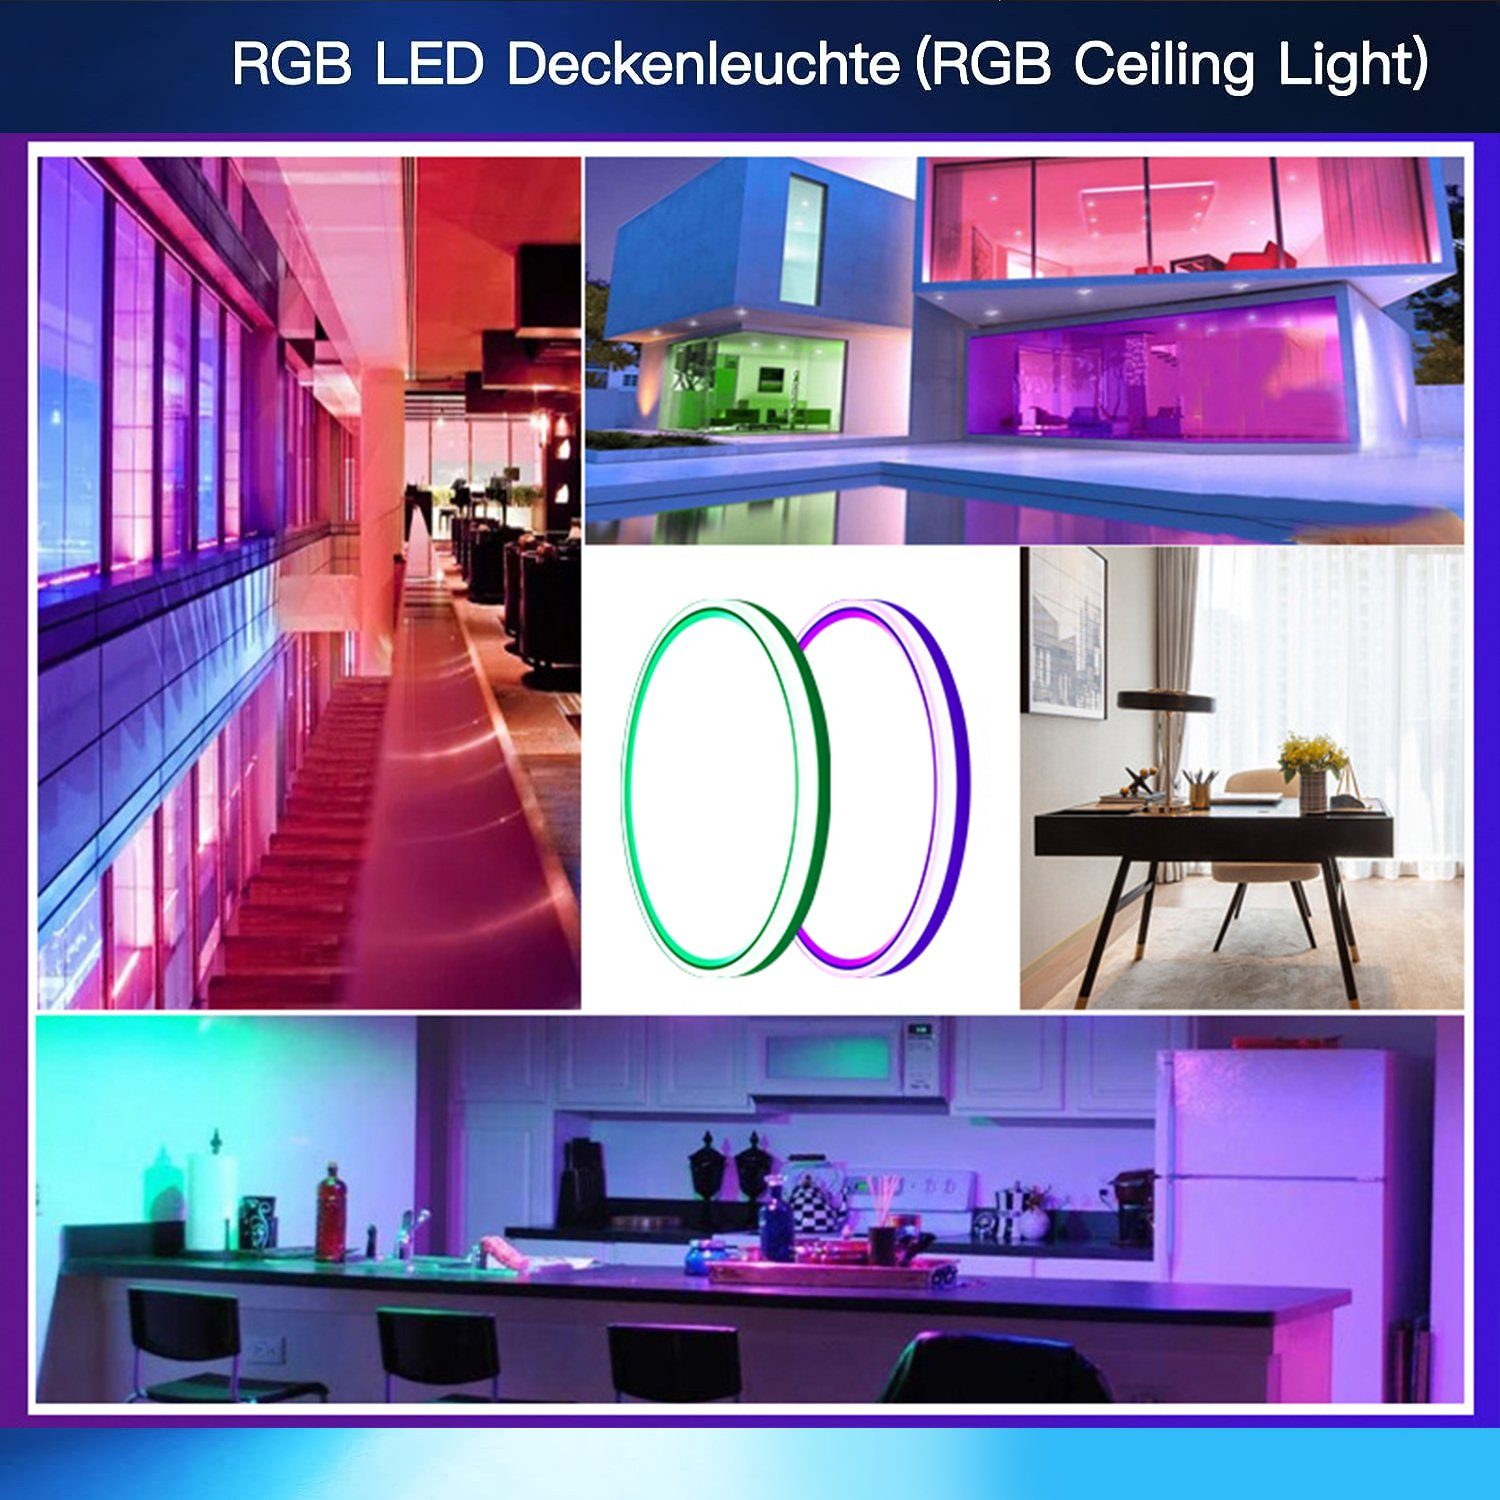 und verschiedene 7 deutscher Dimmbar Dimmable LED mit Orte Farbwechsel RGB+Warmweiß+Neutralweiß+kaltweiß, Bedienungsanleitung,für Led Urlaubsatmosphäre, Deckenlampe RGB IBETTER mit 2000LM Fernbedienung, 24W Deckenleuchte Deckenleuchte Ø30cm